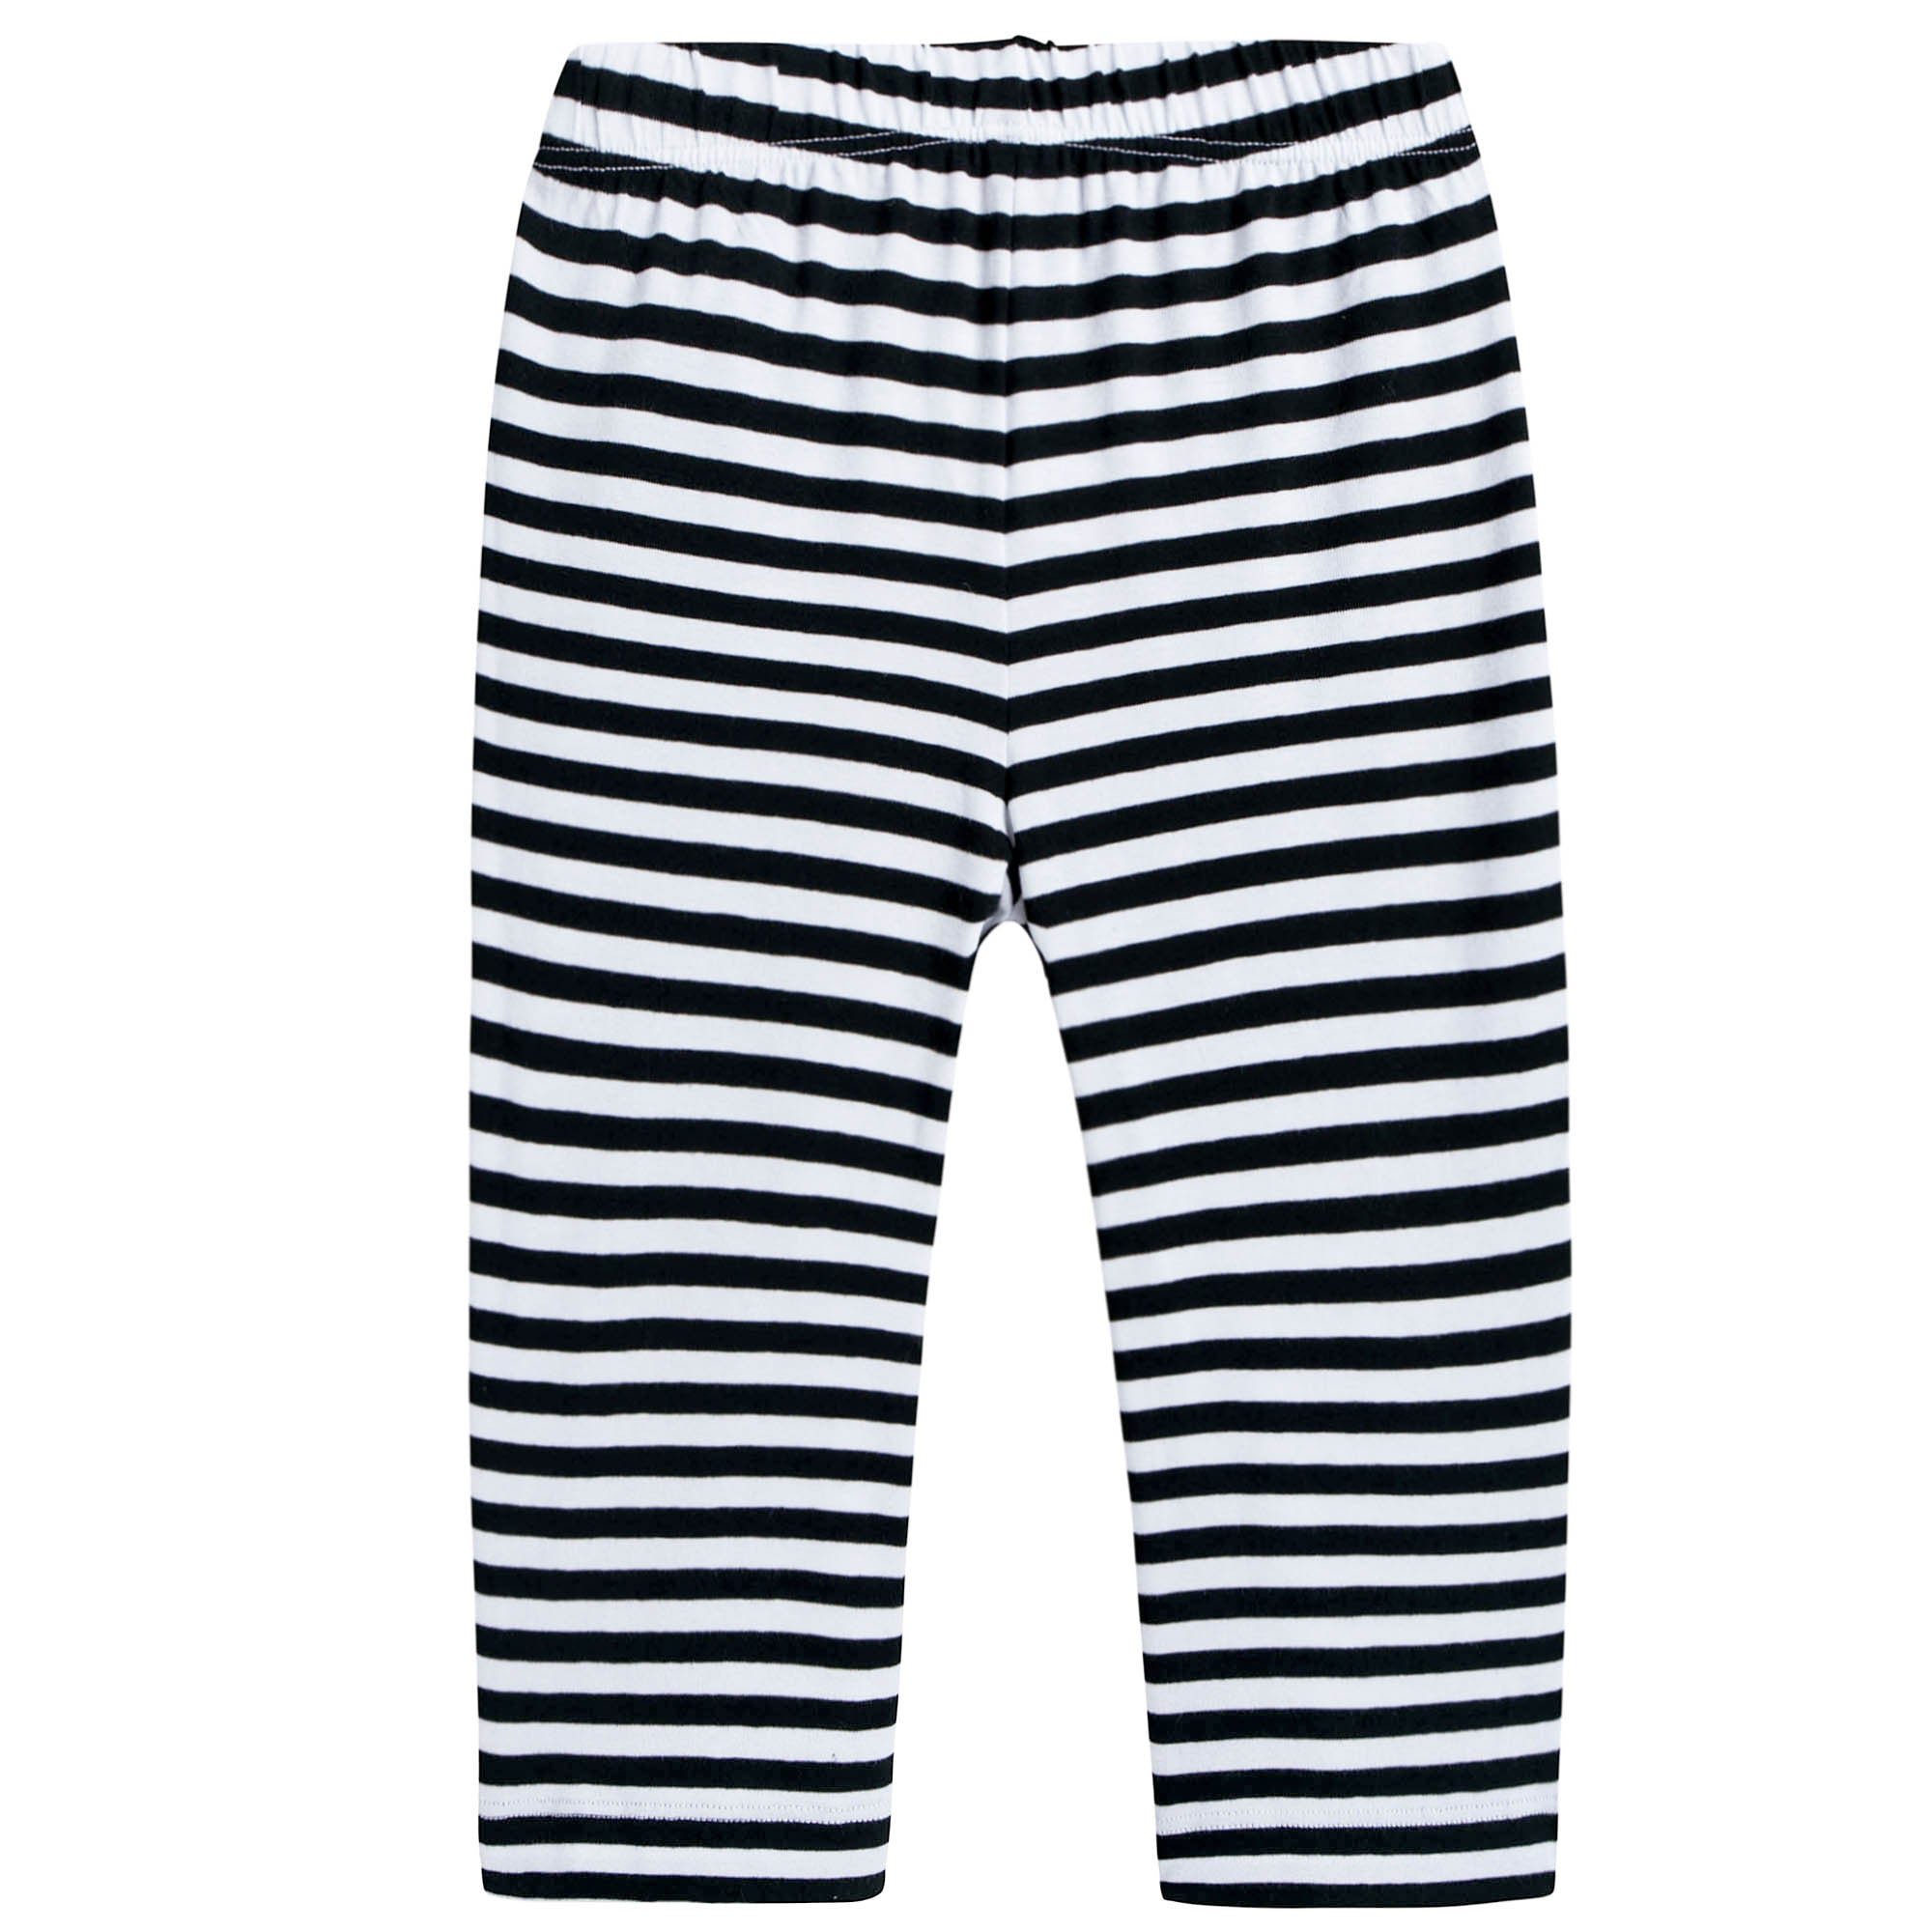 Girls Black & White Striped Pants